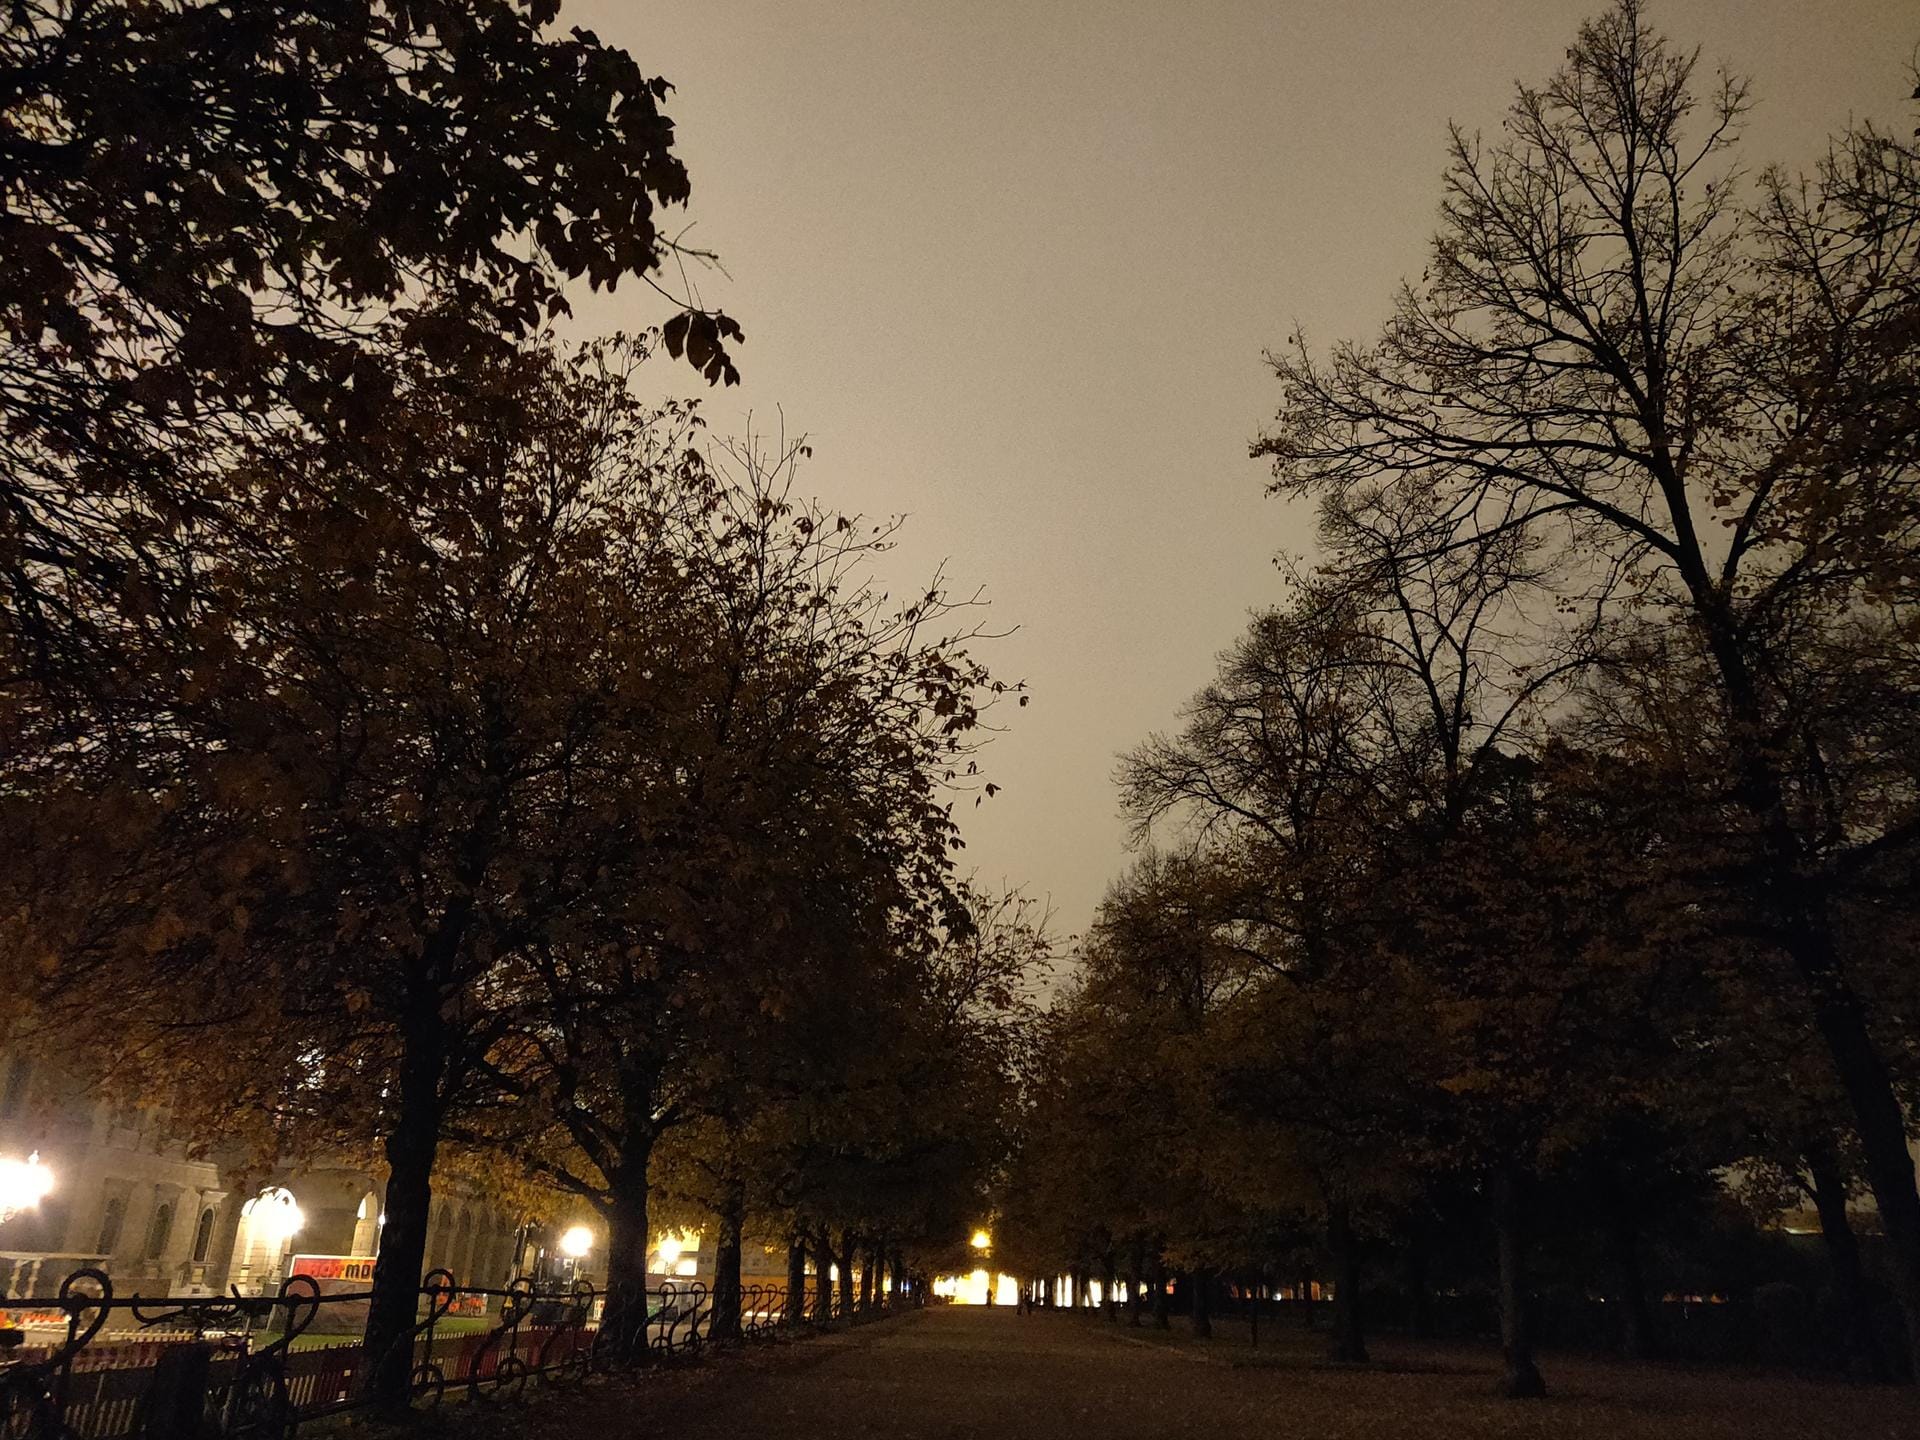 Auf Aufnahme aus dem Hofgarten in München. Das Foto wurde mit der OnePlus-Kamera-App geschossen. Alle Funktionen waren auf automatisch gestellt. In dem Bereich gab es kaum Licht. Die Kamera erhöhte den ISO-Wert auf 6400 bei 1/5 Belichtungszeit. Das Bild wirkt hier dämmrig. In der Realität war die Umgebung sehr schwarz.